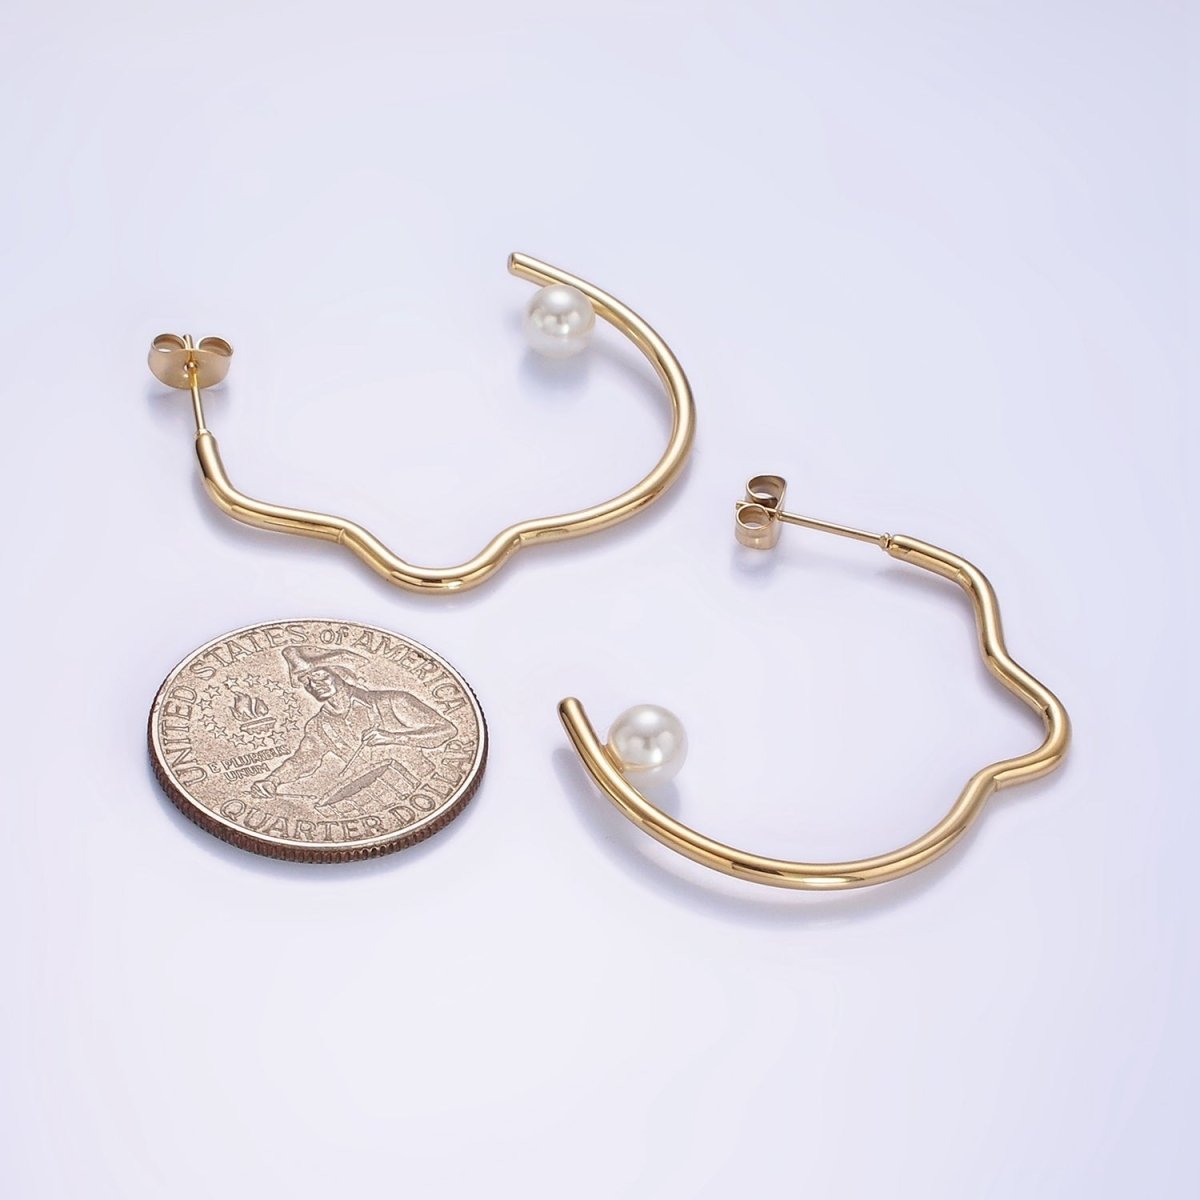 Stainless Steel 40mm Pearl Geometric Curved C-Shaped Hoop Earrings | AB1150 - DLUXCA